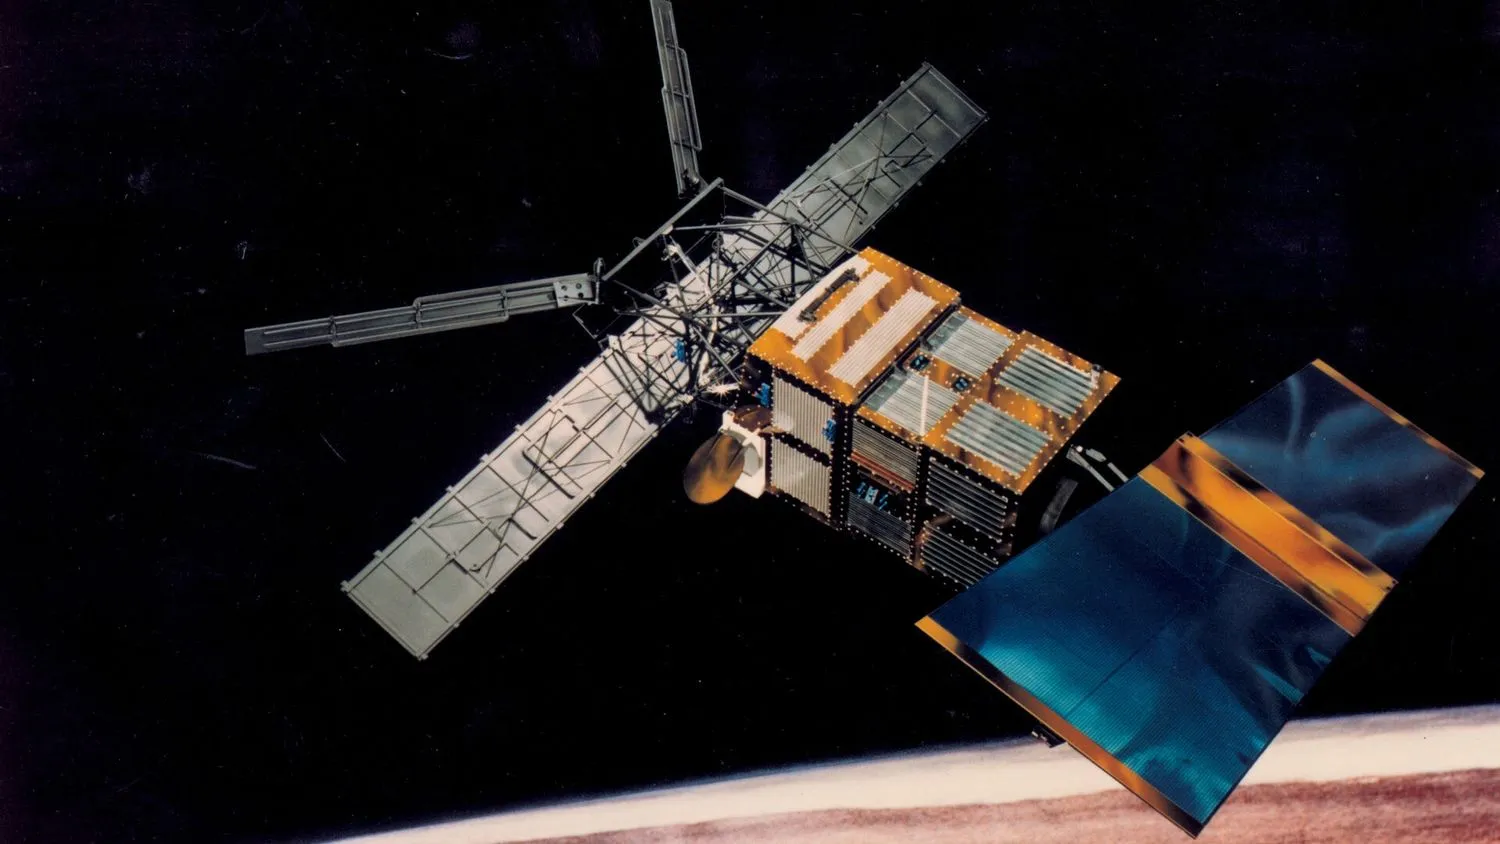 Mehr über den Artikel erfahren Der Absturz eines großen, toten Satelliten war ein Weckruf für Weltraumschrott, sagen Experten